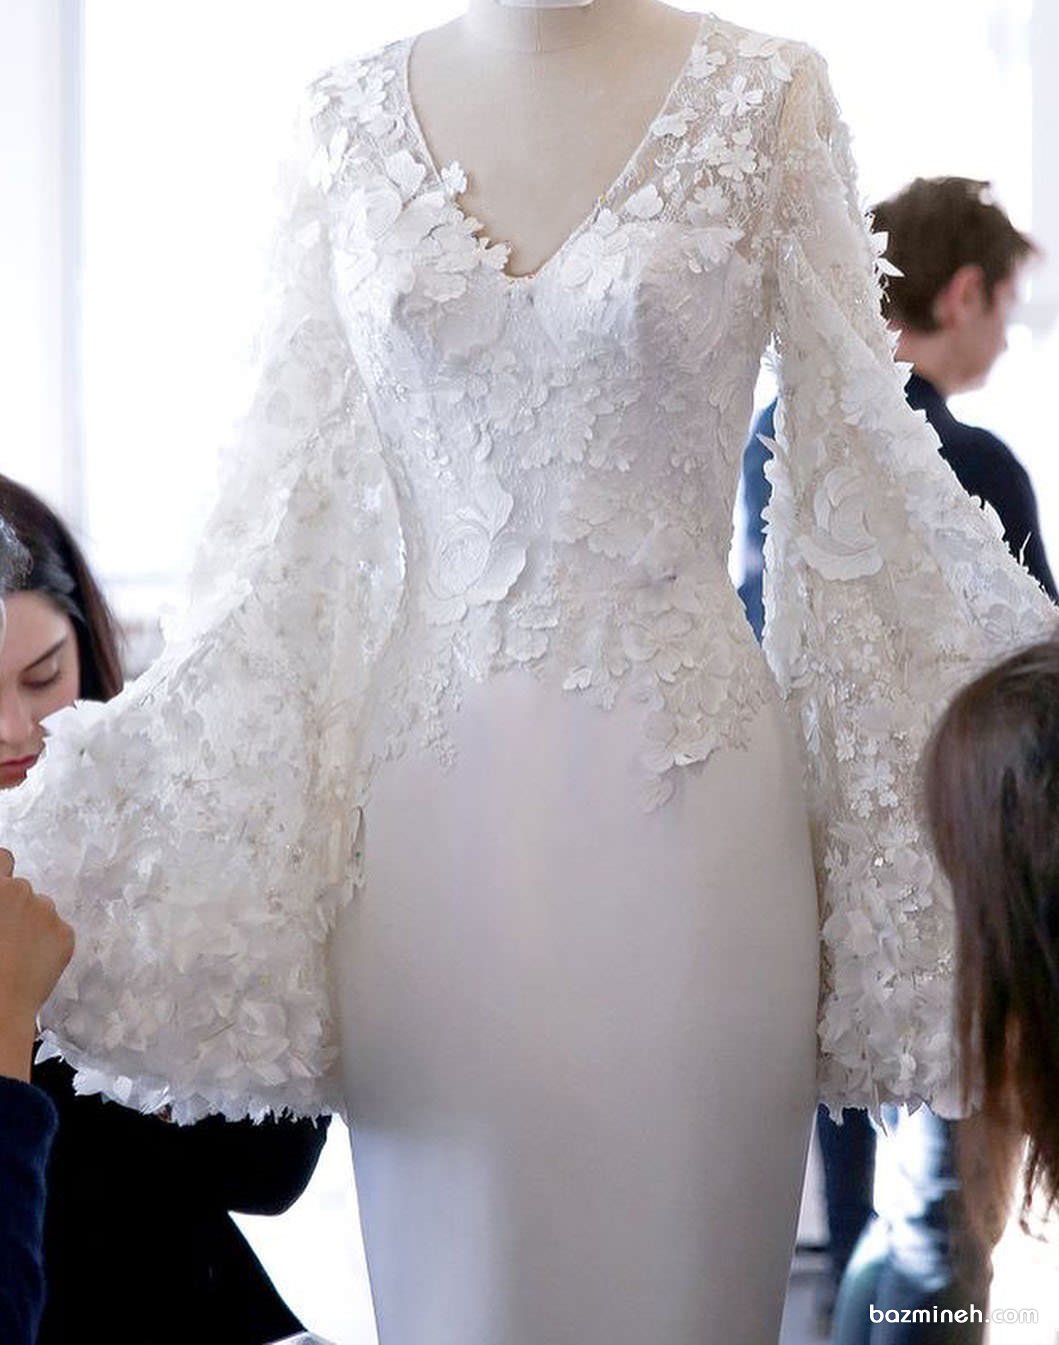 مدل بالا تنه کار شده لباس مجلسی با گل های برجسته در آستین ها و یقه ی هفت باز پیشنهادی زیبا برای عروس خانم ها در مراسم عقد محضری یا لباس روز فرمالیته